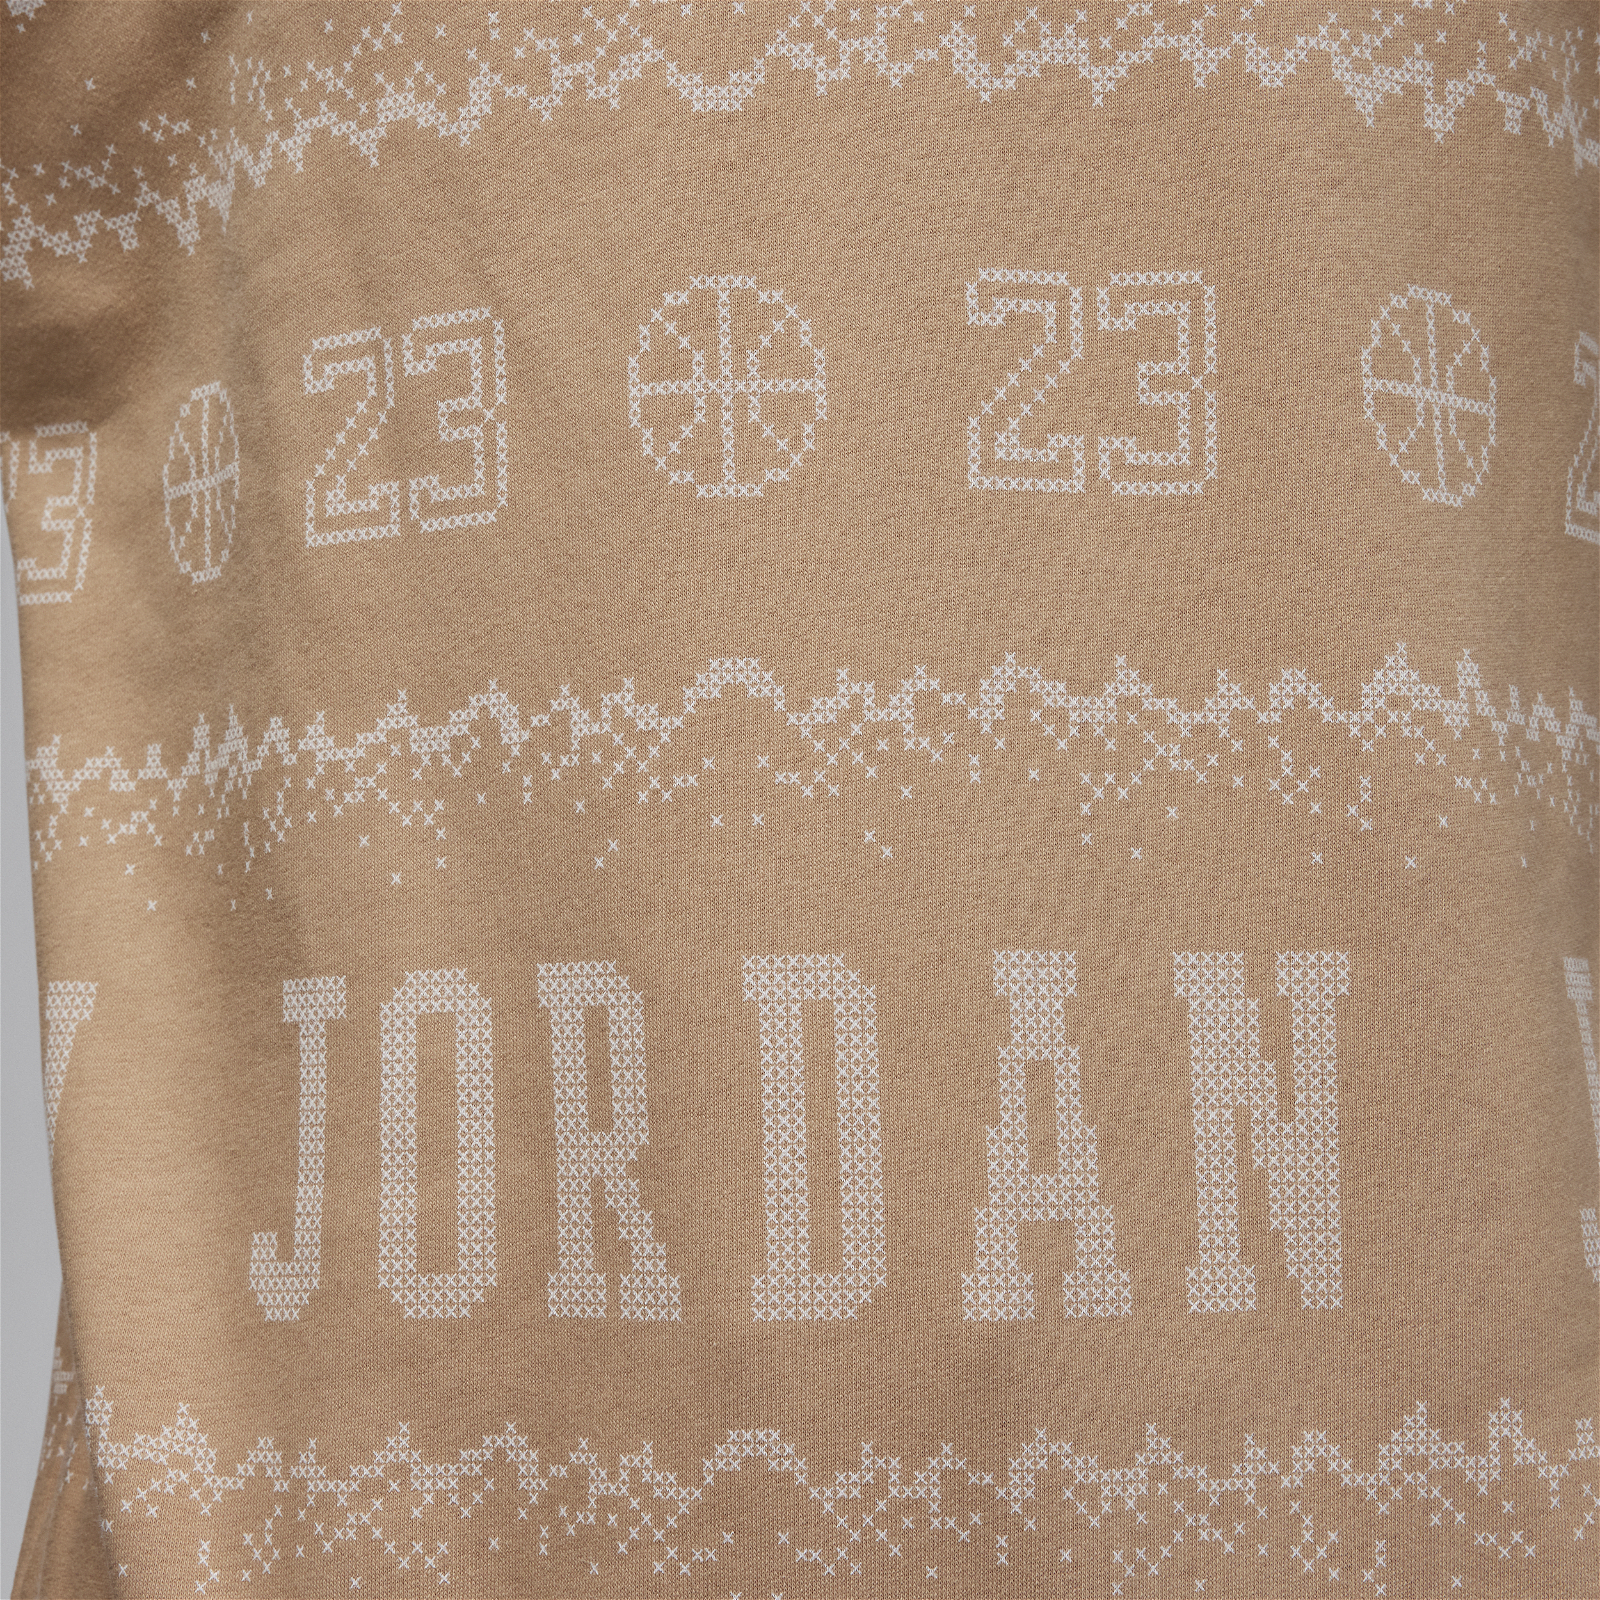 Jordan Essentials Holiday Fleece Crew.